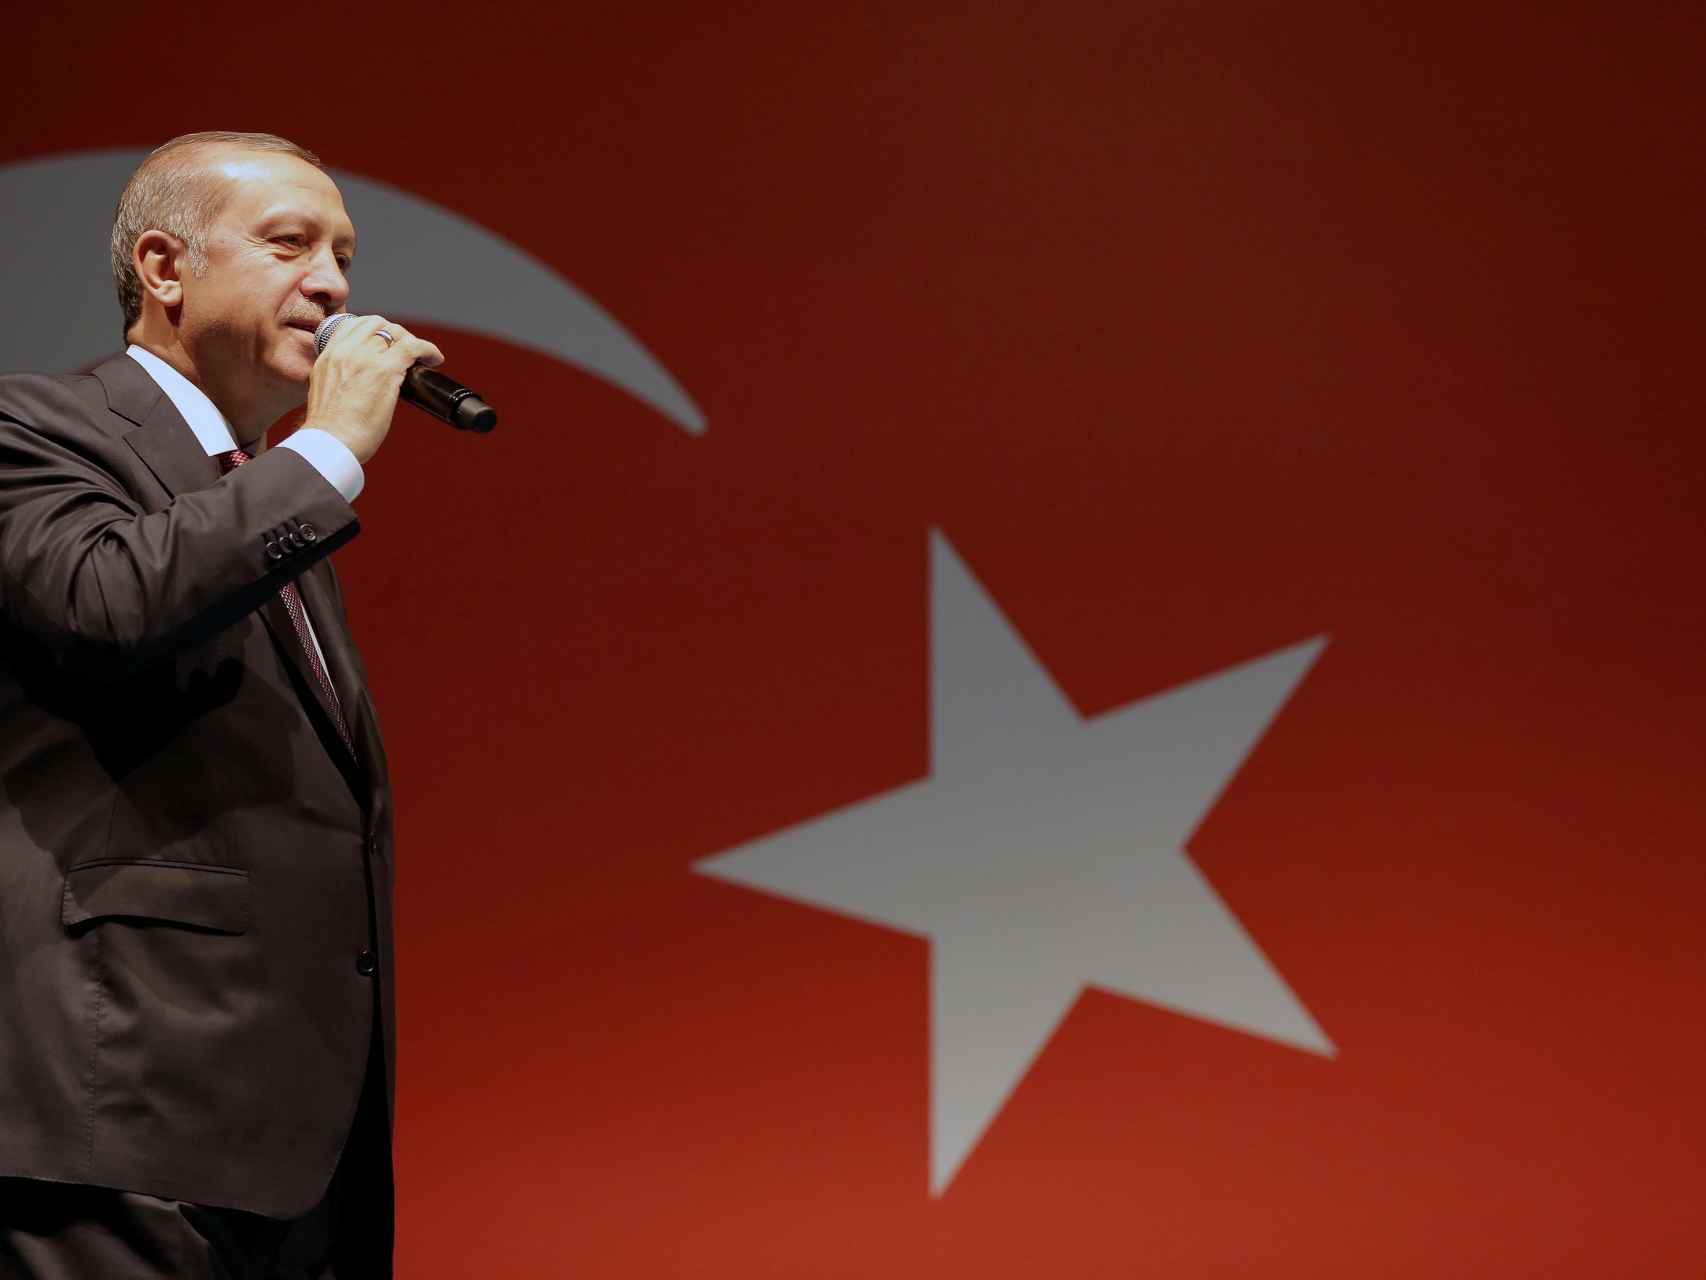 El presidente turco ha reaccionado con virulencia al intento de golpe.